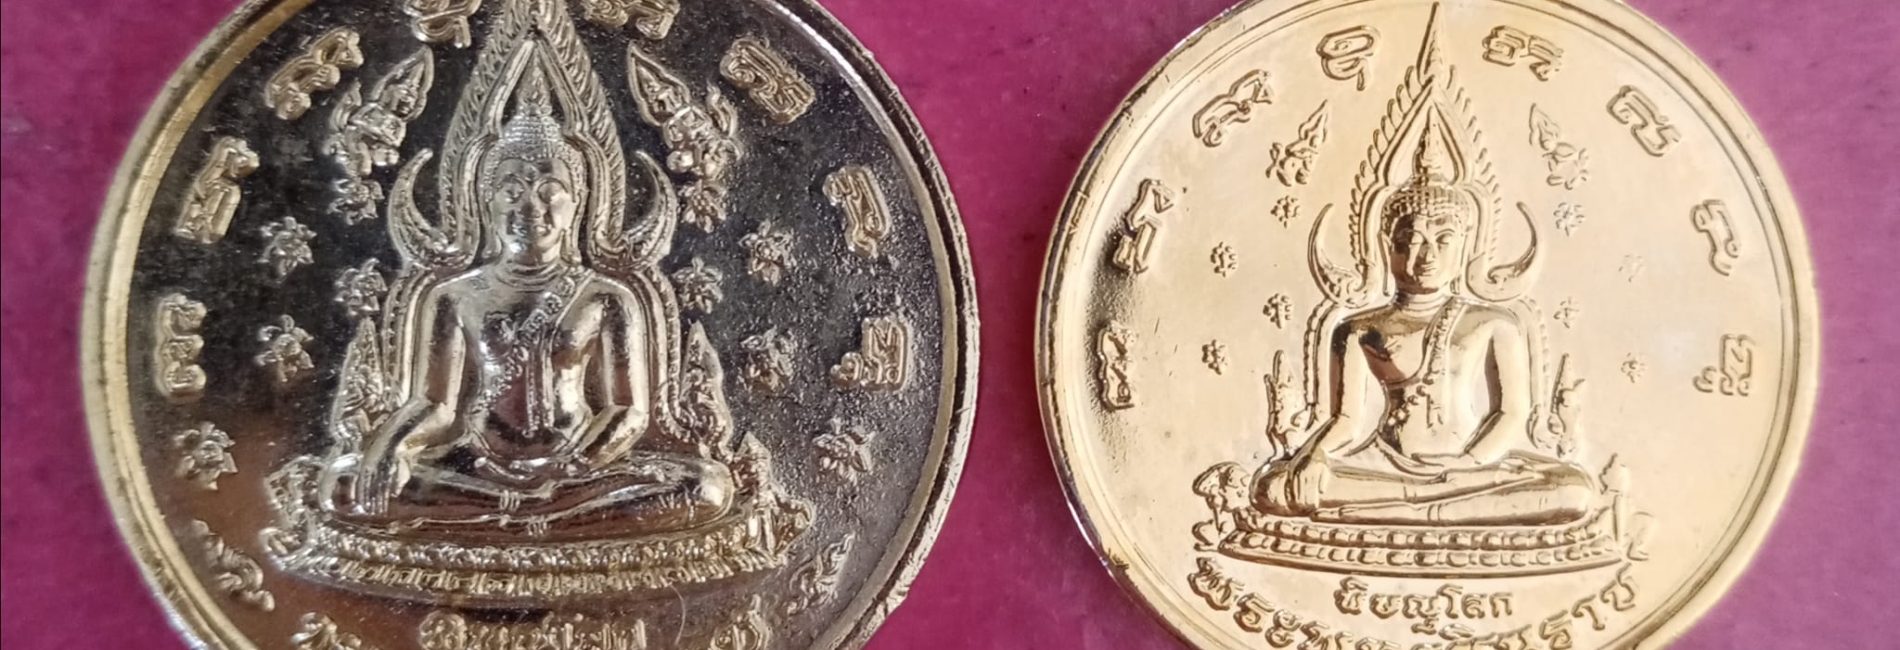 ขายดหมา2เหรียญ เหรียญ400ปี พระราชวังจันทร์ ราคาไม่แรงสอ